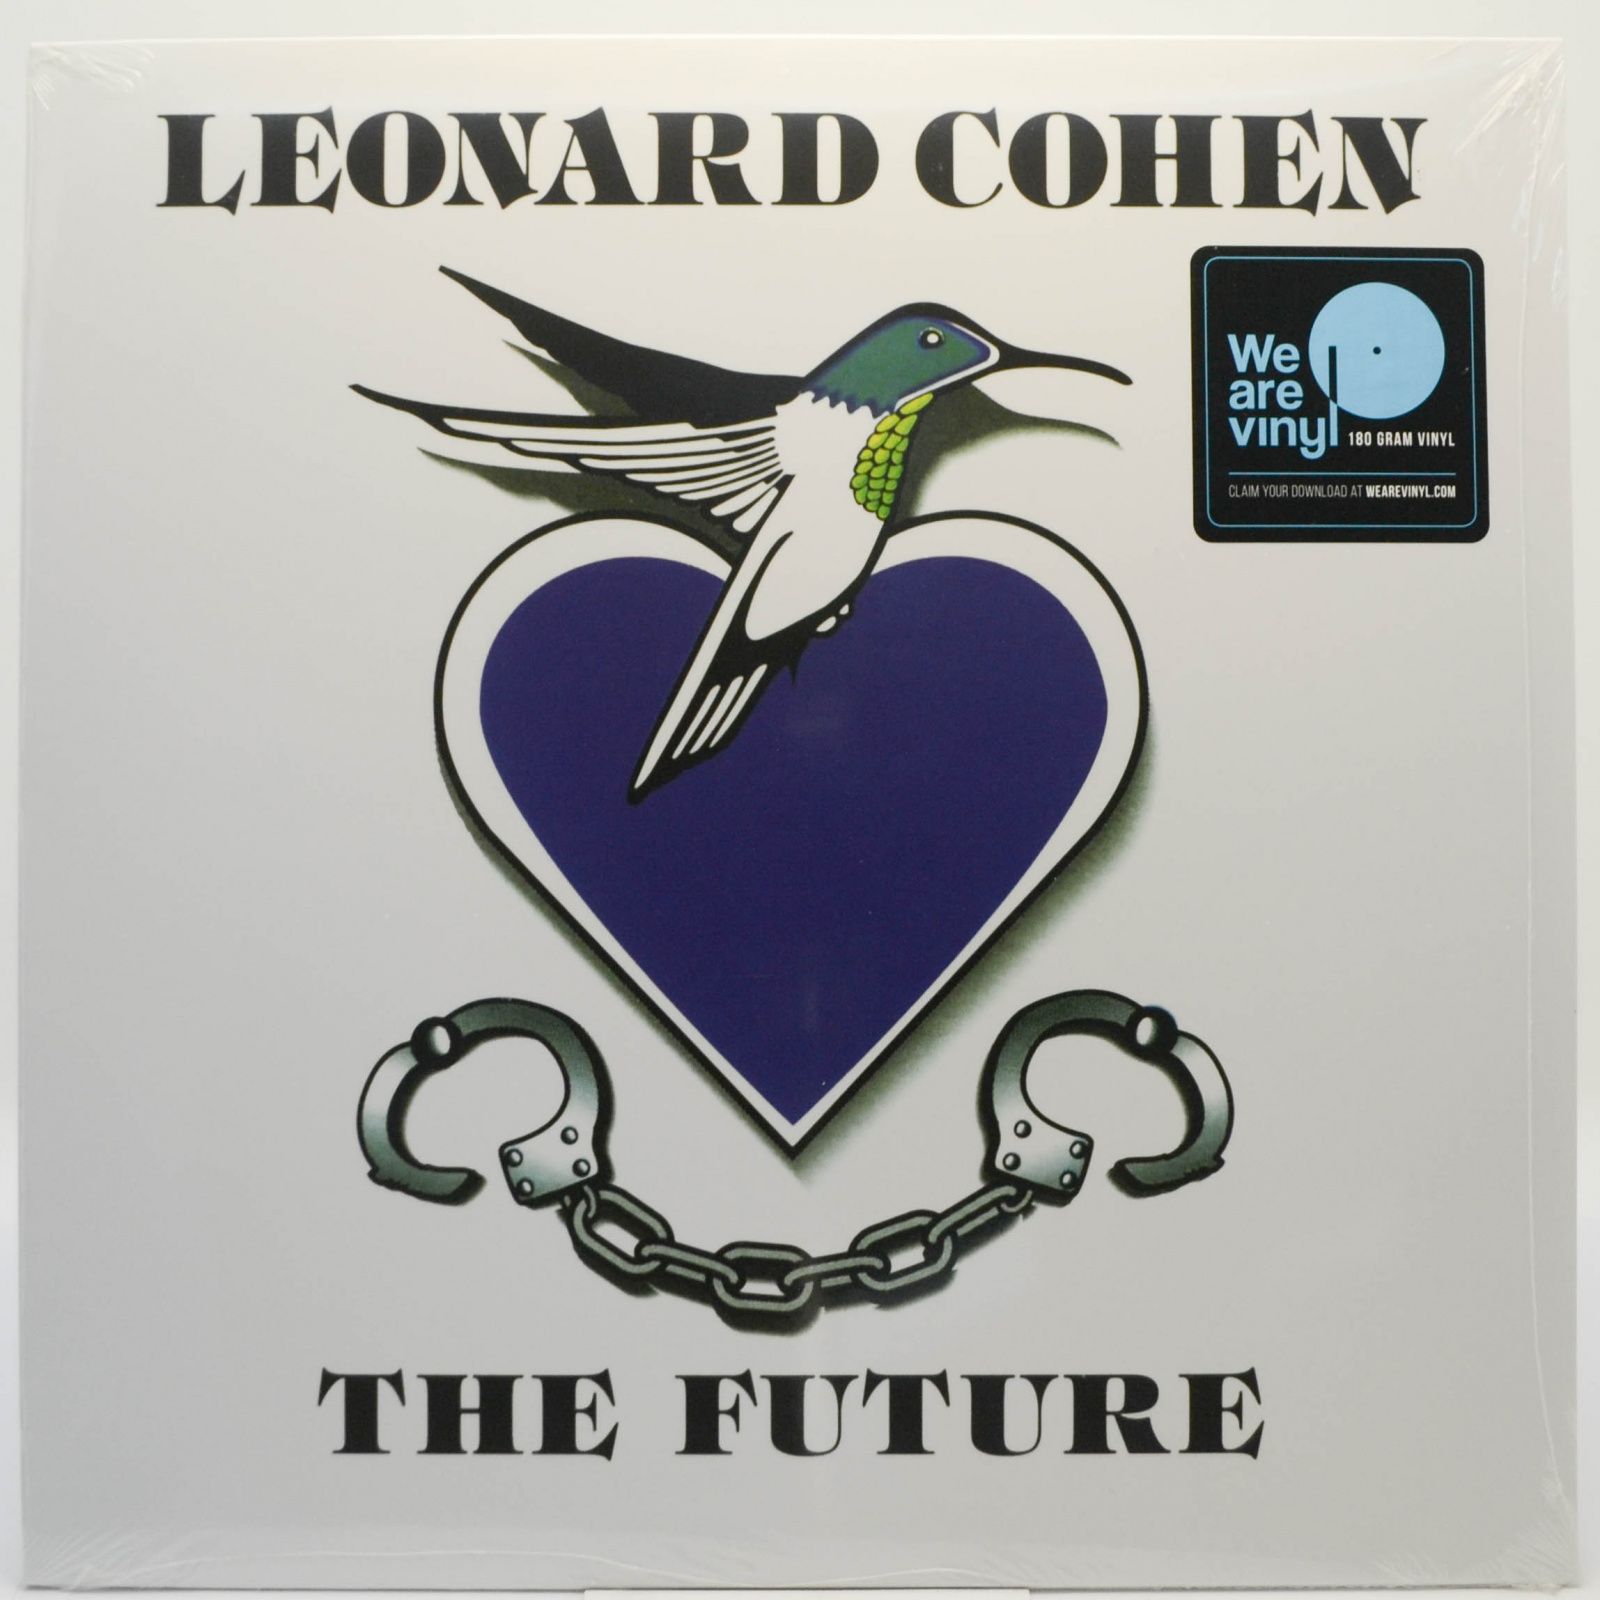 Leonard Cohen — The Future, 1992